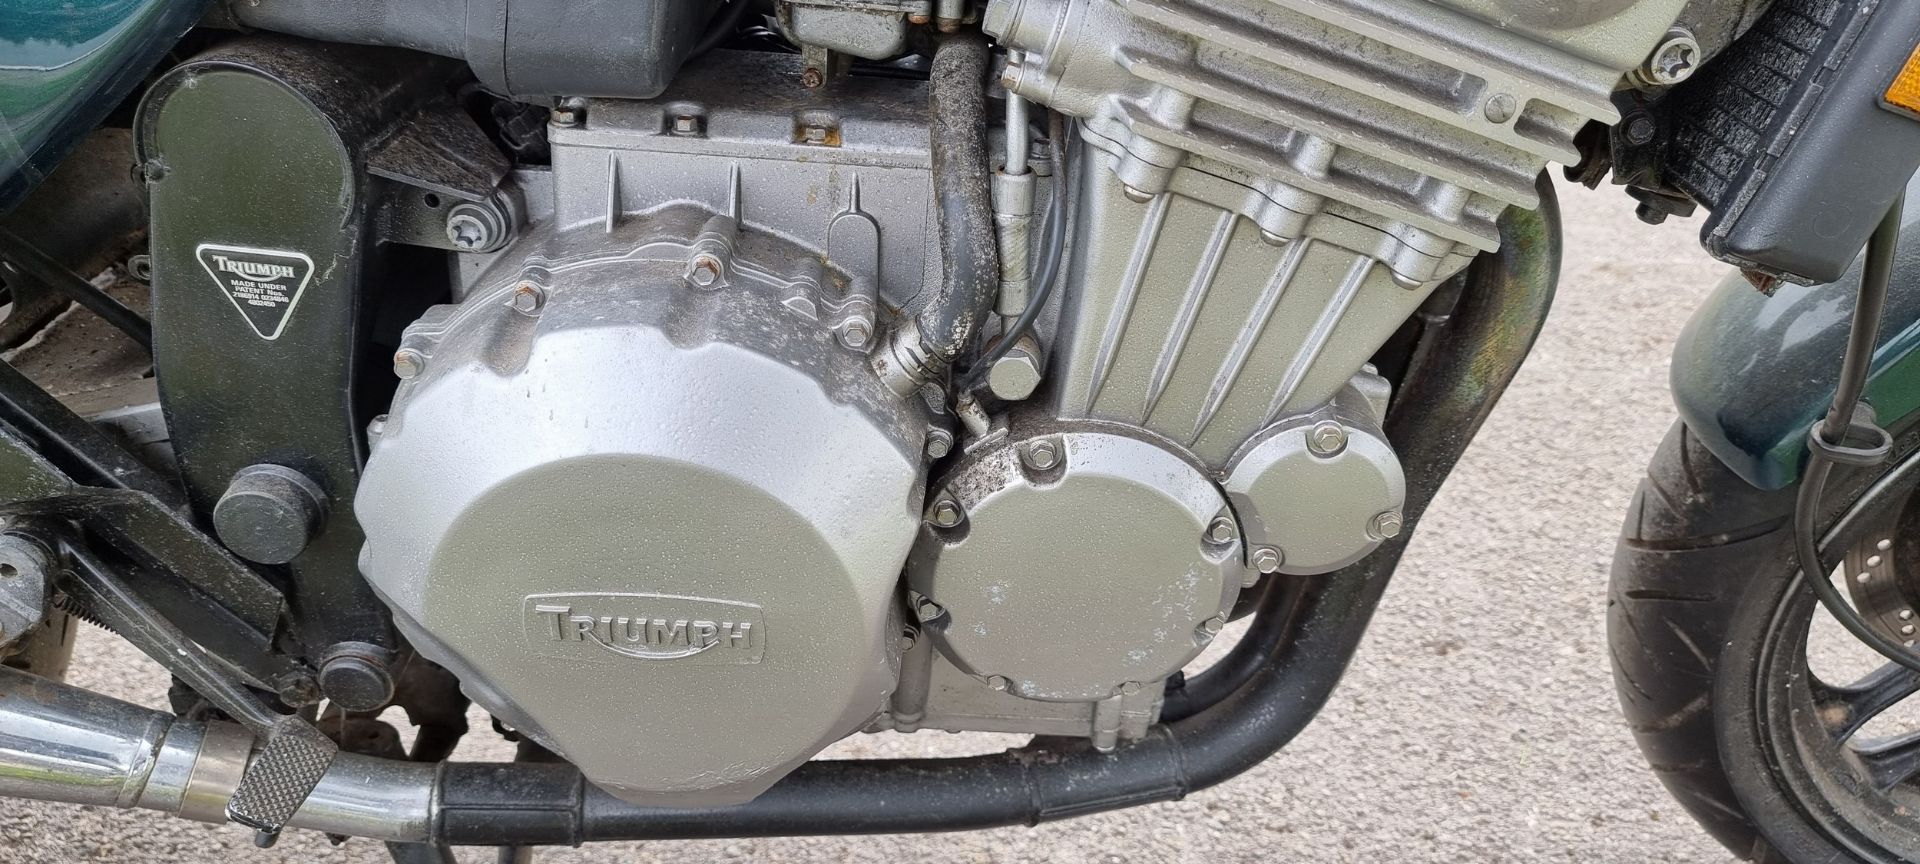 1991 Triumph Trident, 885cc. Registration number J202 ORW. Frame number SMTTC338DDM001104. Engine - Image 6 of 12